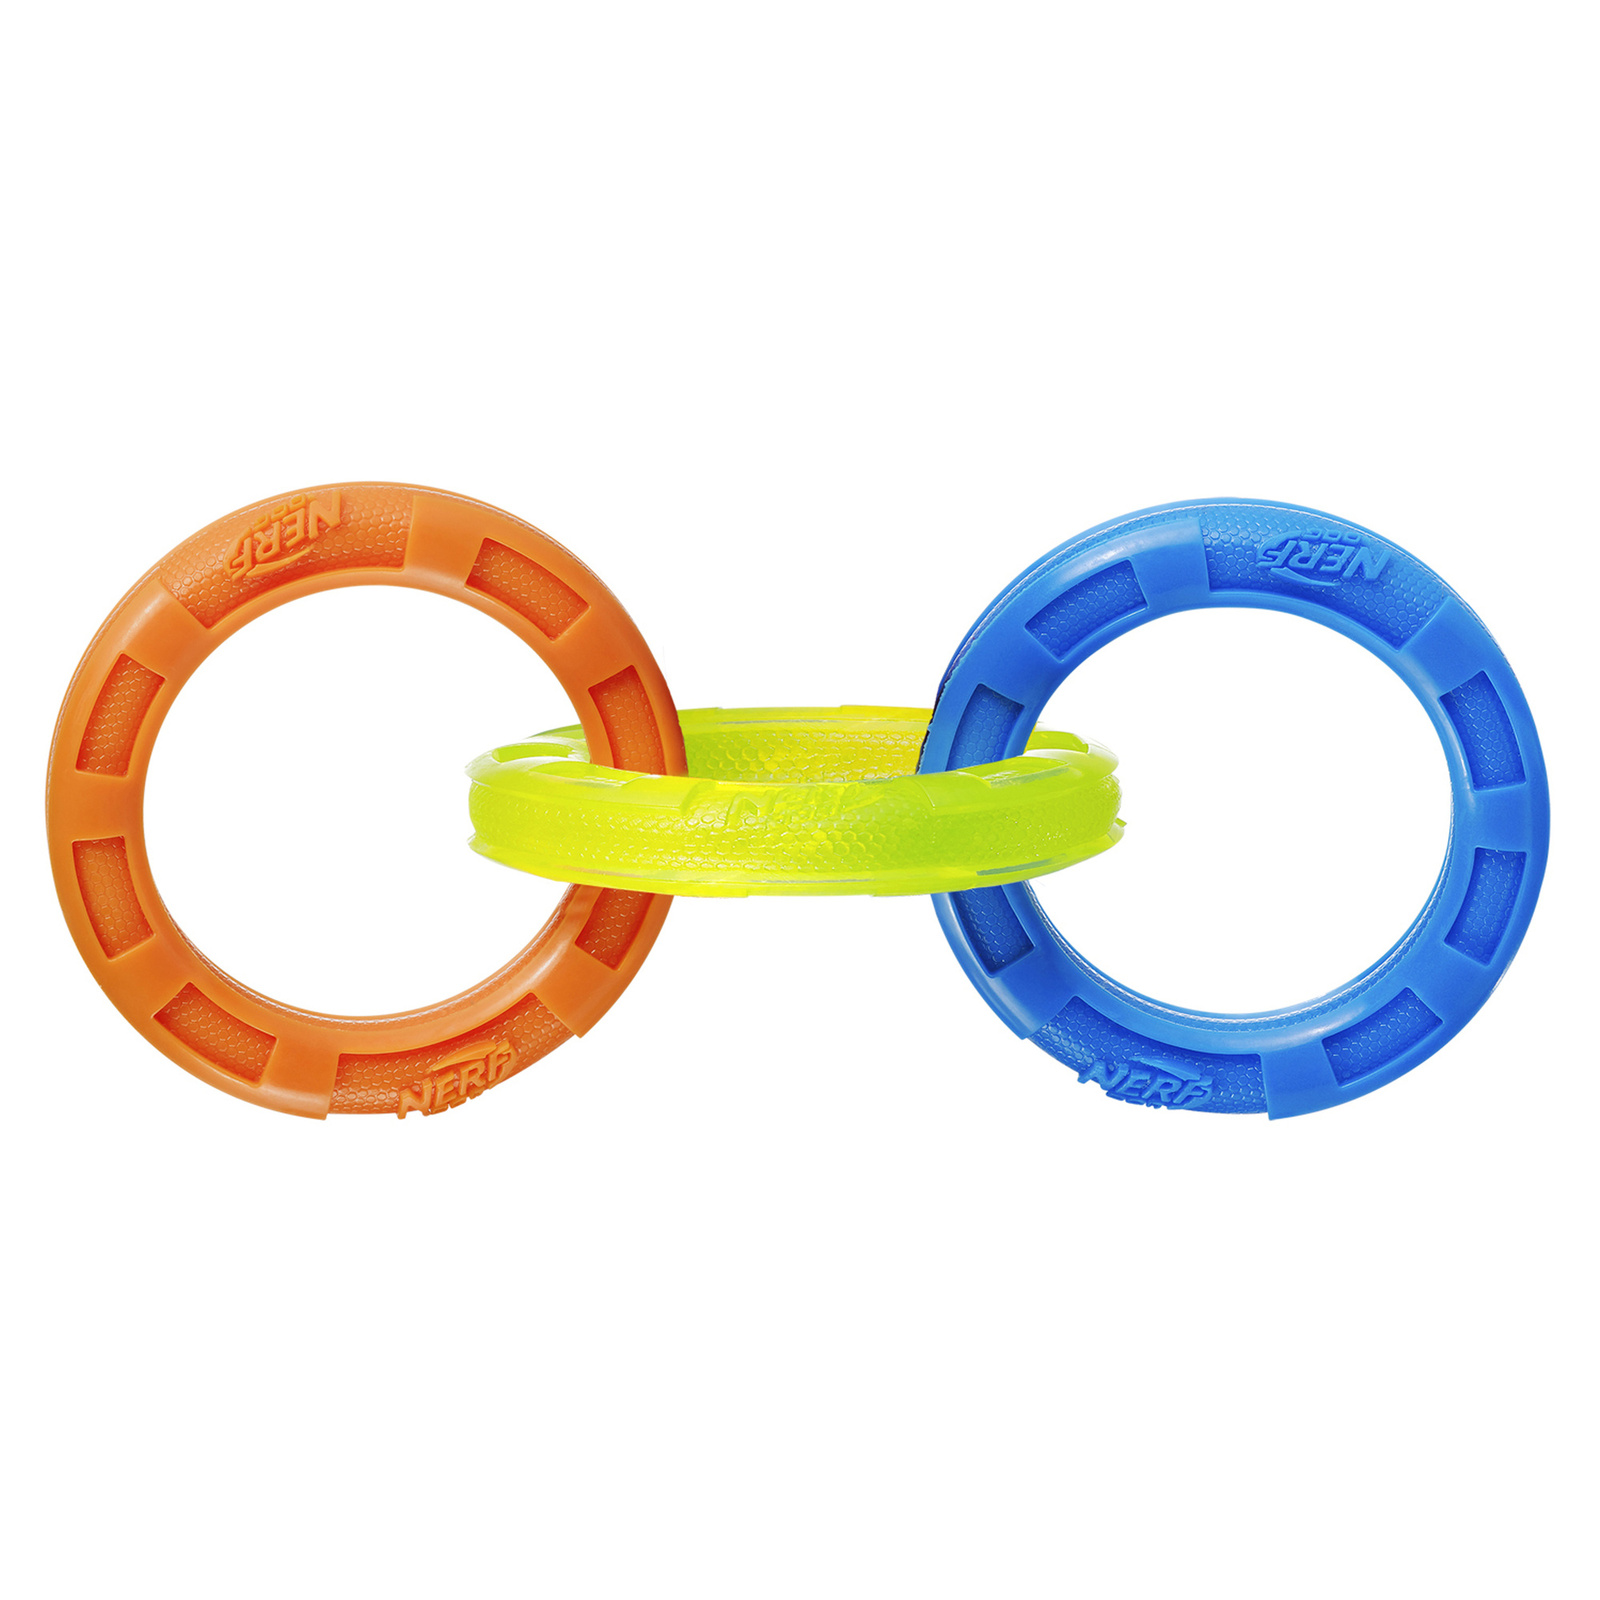 Nerf игрушка Кольца-грейфер , 27 см, (синий/оранжевый/зеленый) (29 см) Nerf игрушка Кольца-грейфер , 27 см, (синий/оранжевый/зеленый) (29 см) - фото 1